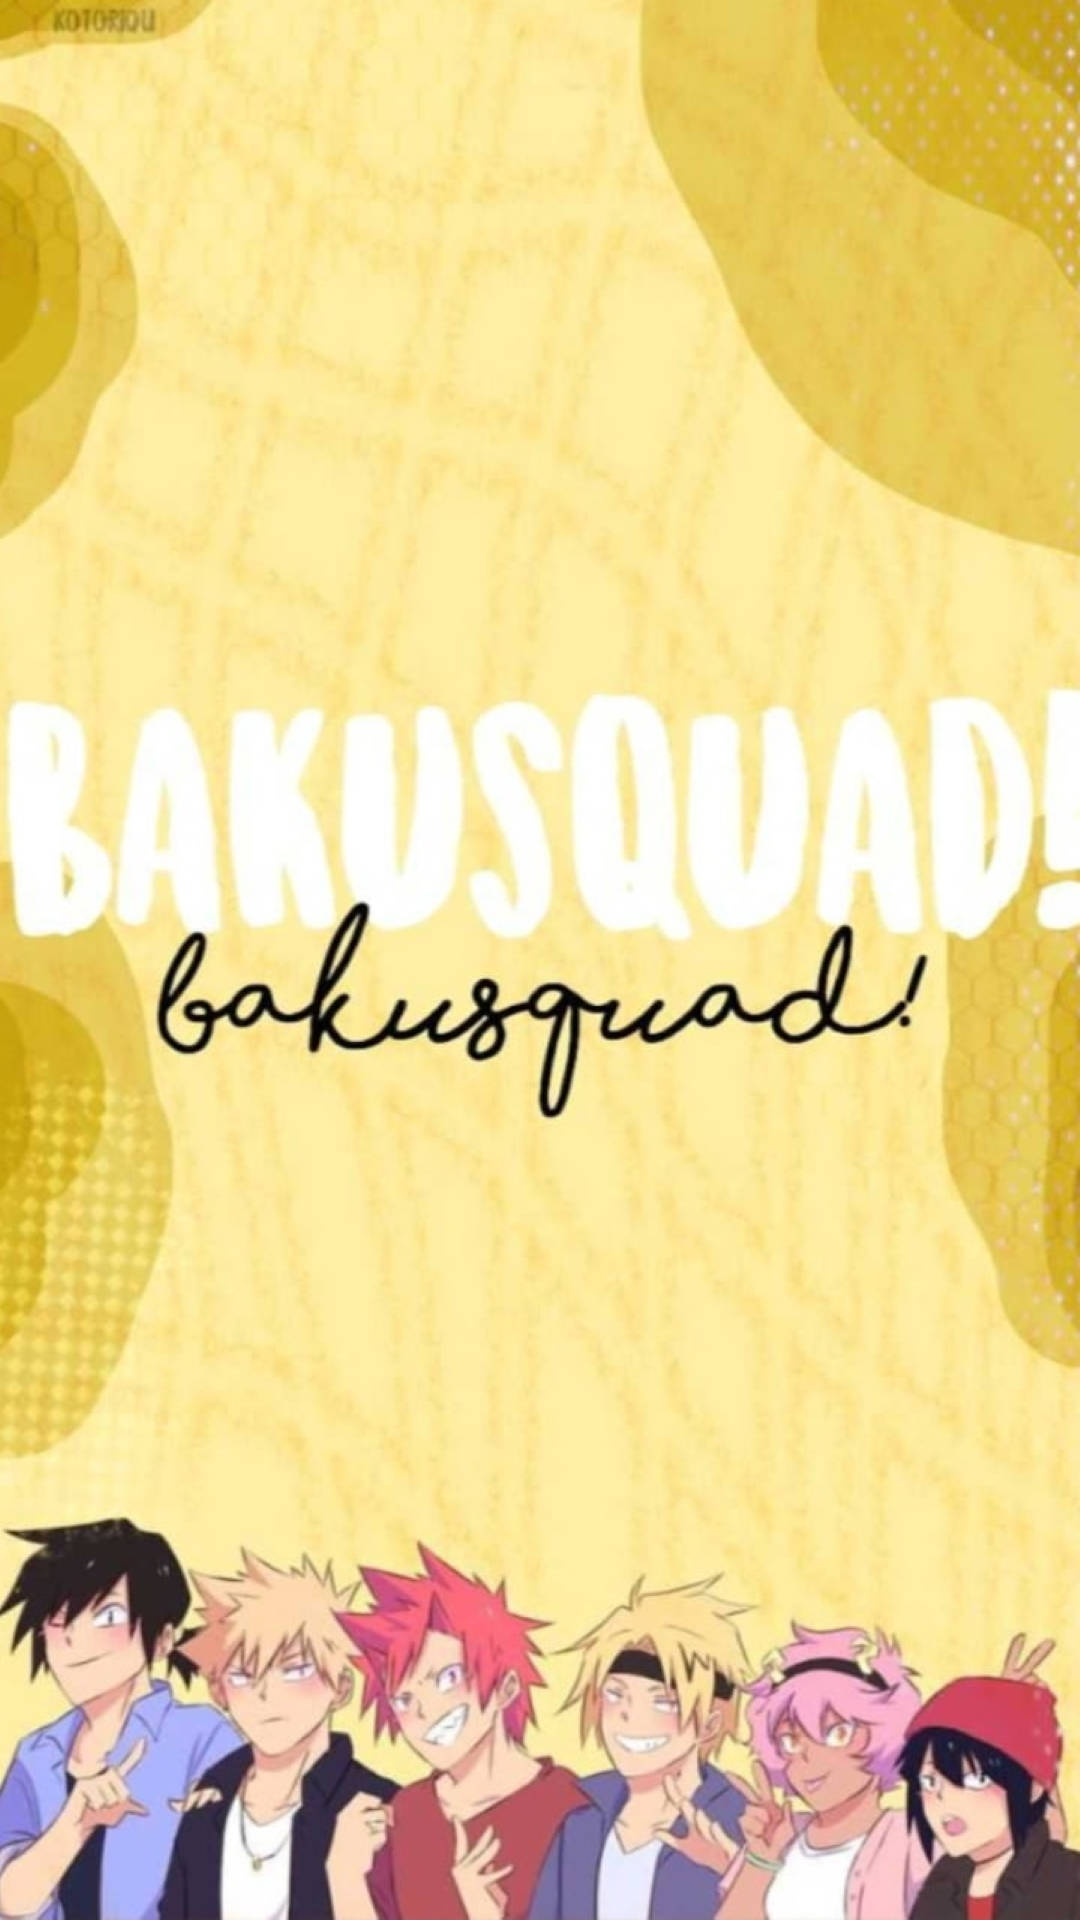 Bakusquad Yellow Art Background